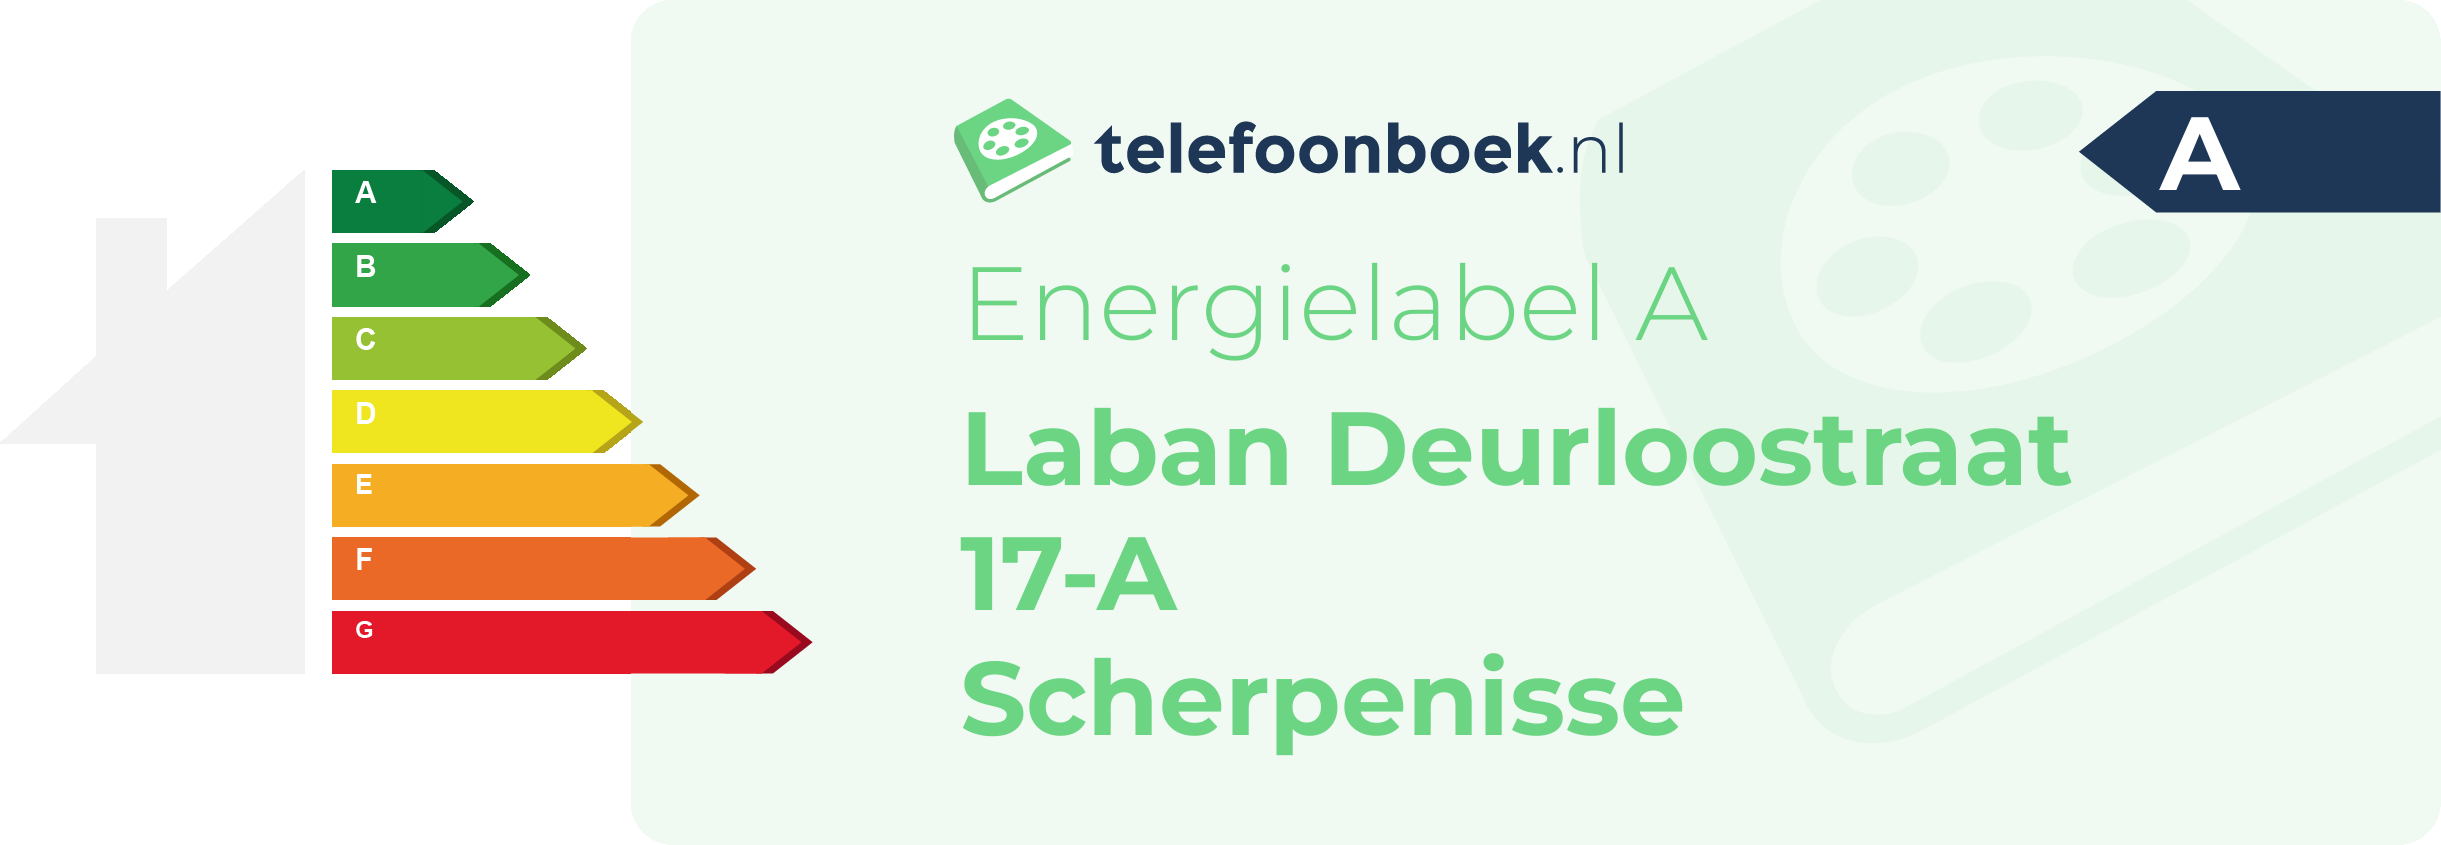 Energielabel Laban Deurloostraat 17-A Scherpenisse